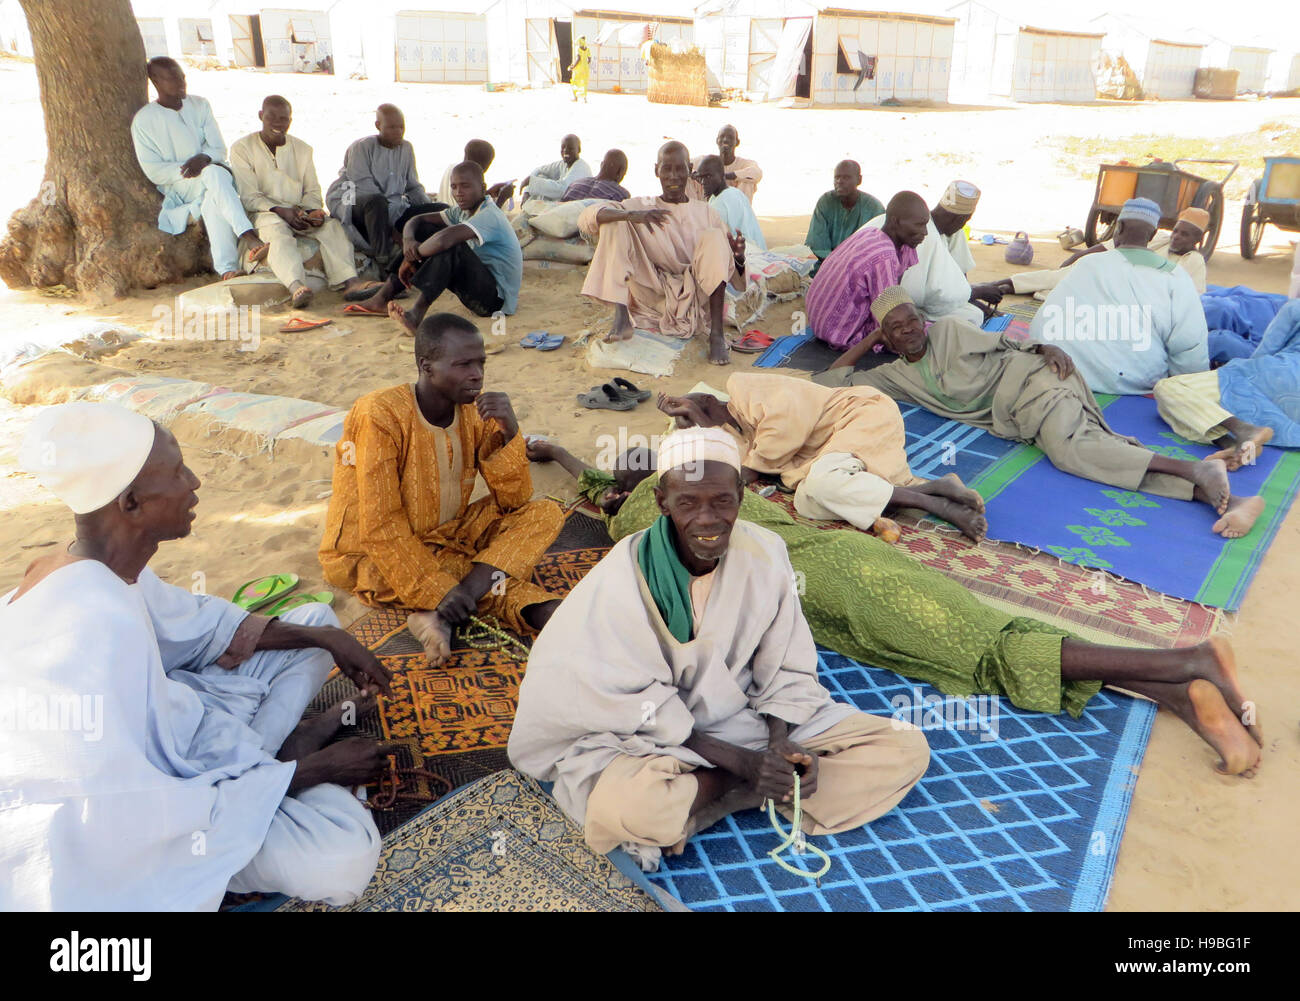 Maiduguri, Nigeria. 27 Oct, 2016. Männer sitzen Im Schatten am 27.10.2016 im Flüchtlingslager Garage Muna für durch die islamistische Terrorgruppe Vertriebene Boko Haram à Maiduguri dans Nord-Ost-Nigeria. (Zu dpa "Gerettet, aber nicht gewollt : Das le destin d'der Opfer-Boko-Haram" vom 21.11.2016) Sam Olukoya/dpa Foto : Sam Olukoya/apd /afp/Alamy Live News Banque D'Images